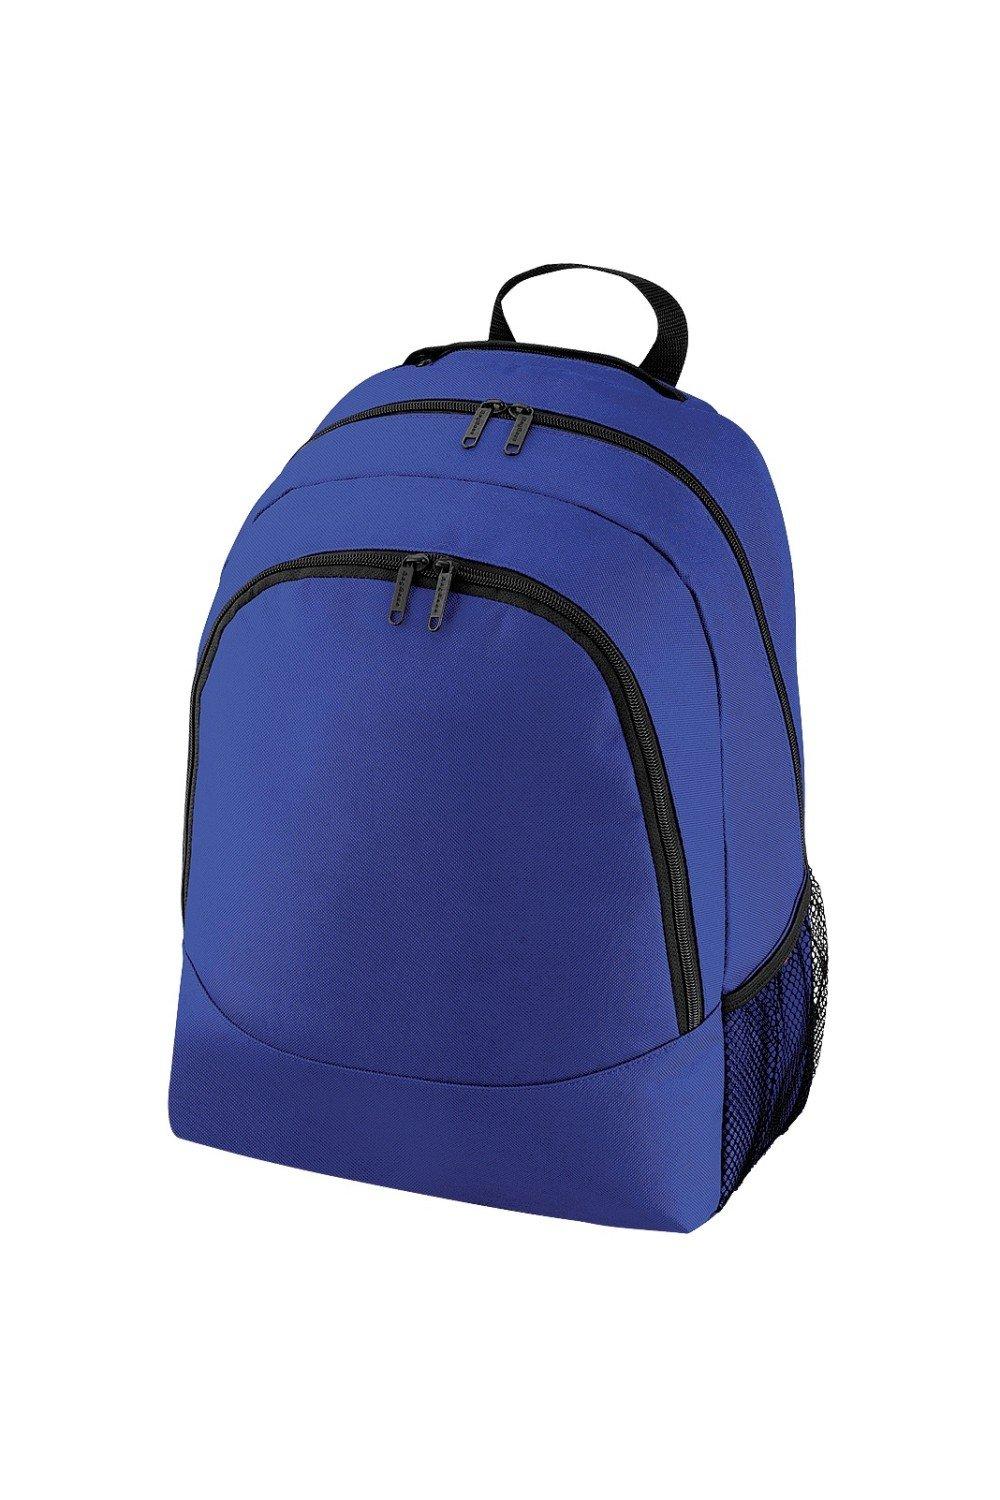 Универсальный многоцелевой рюкзак/рюкзак/сумка (18 литров) (2 шт. в упаковке) Bagbase, синий чехол mypads toyota тойота 2 для tcl 20 5g задняя панель накладка бампер